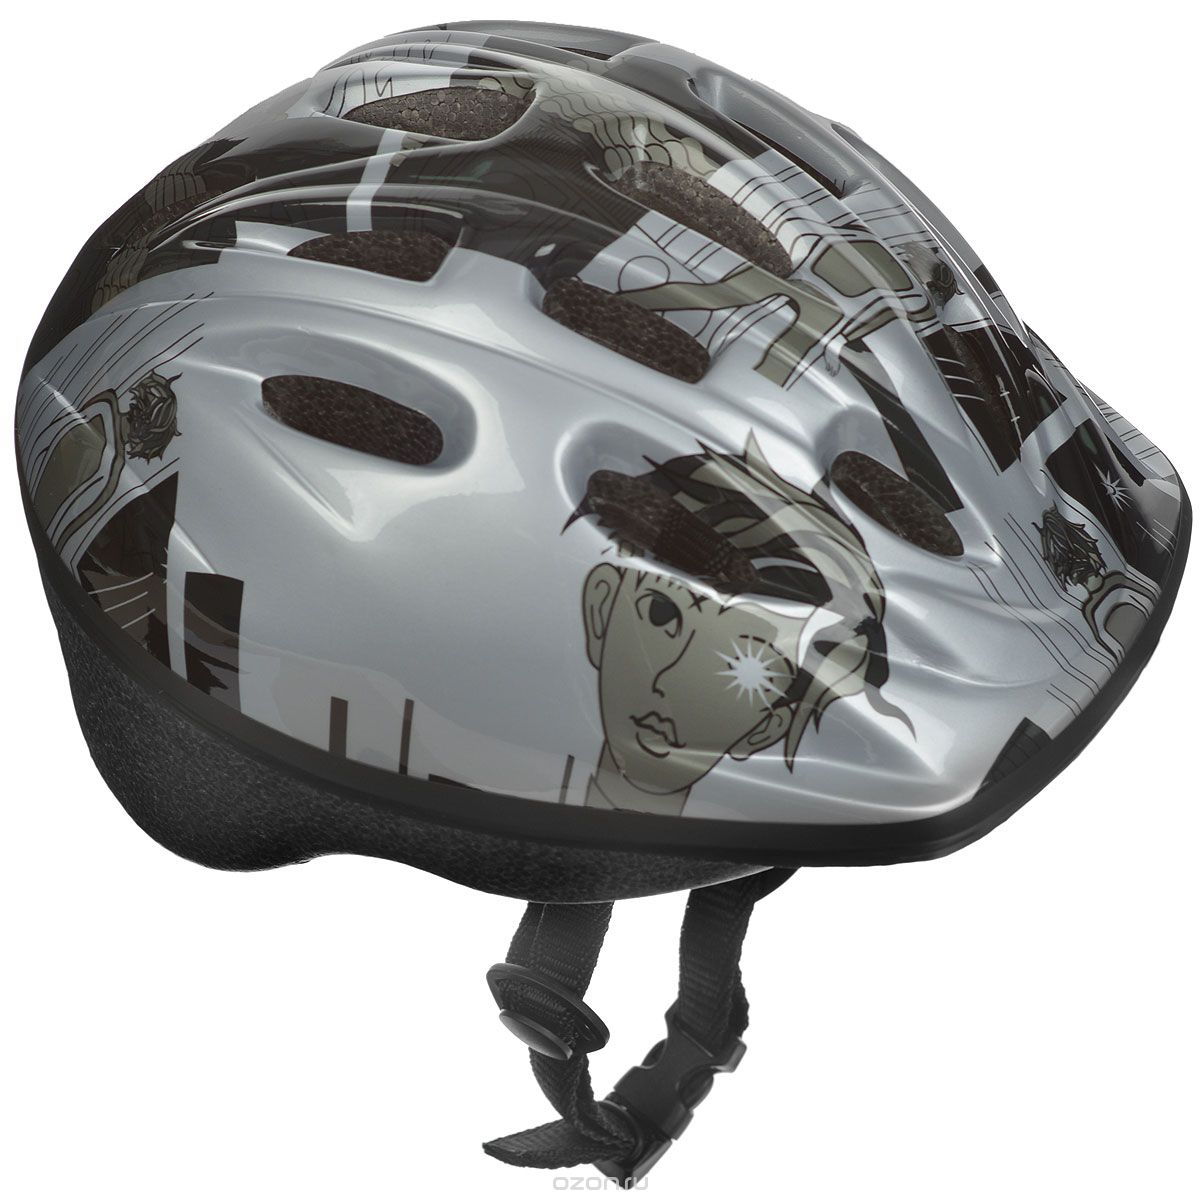 Шлем защитный “Action”, цвет: серый. Размер XS /48-51/. PWH-30